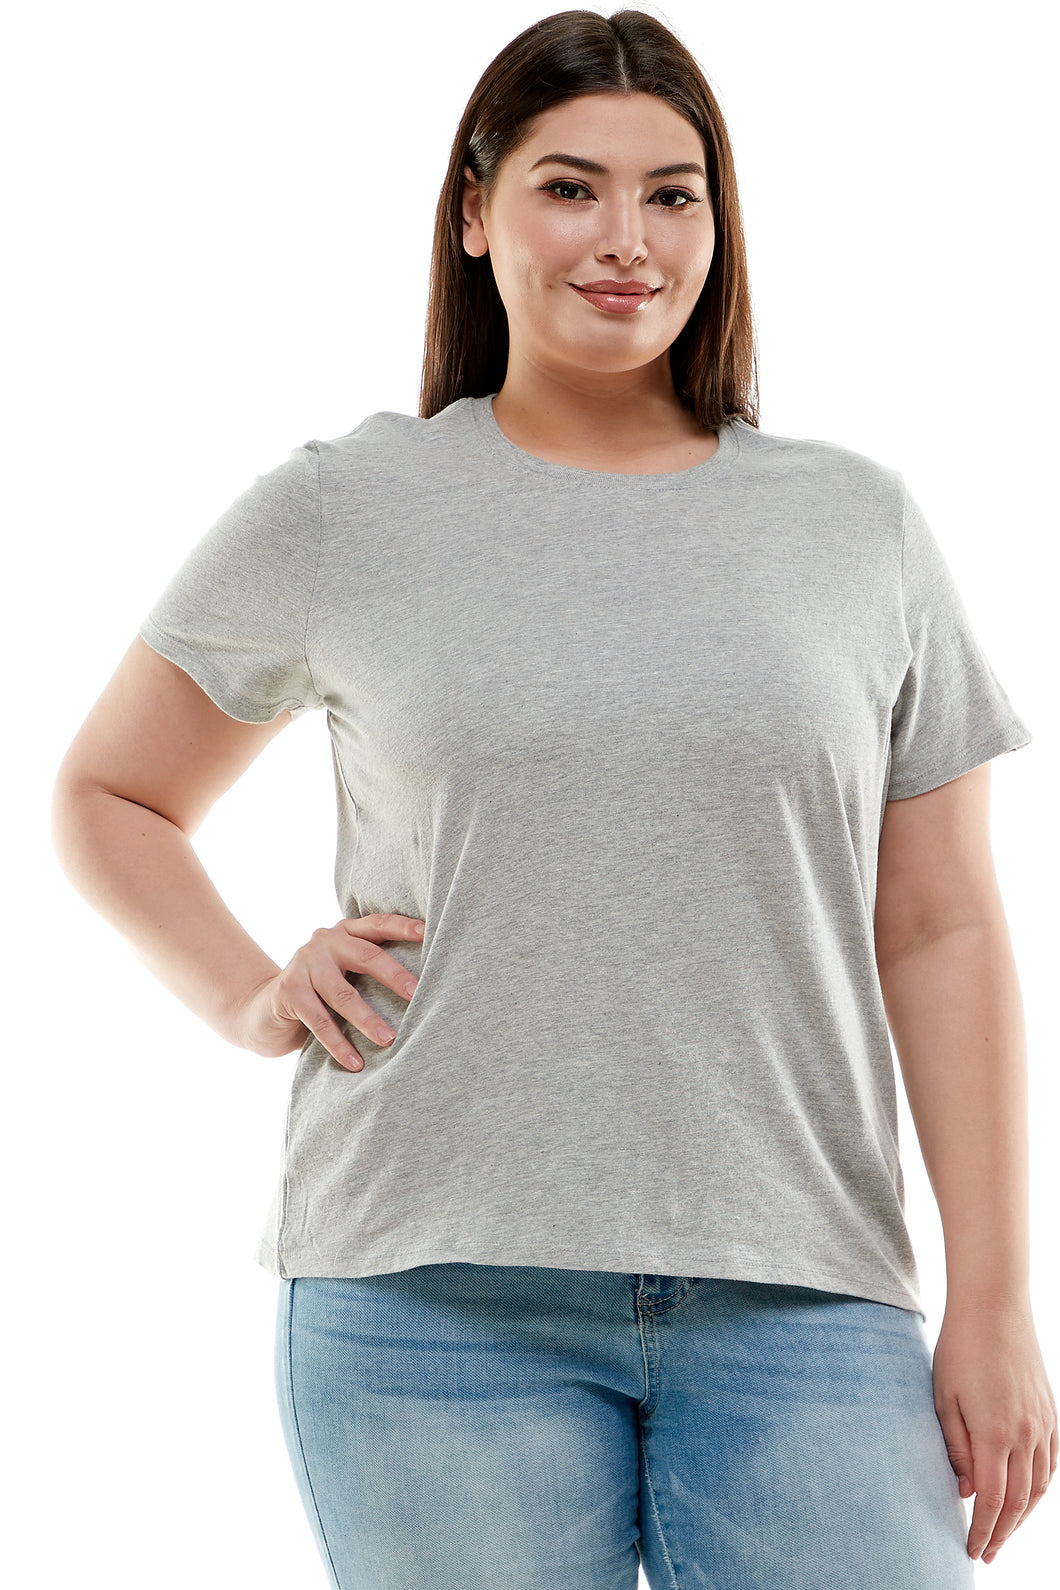 Plus Size Basic Short Sleeve Tee Shirt | Heather Gray